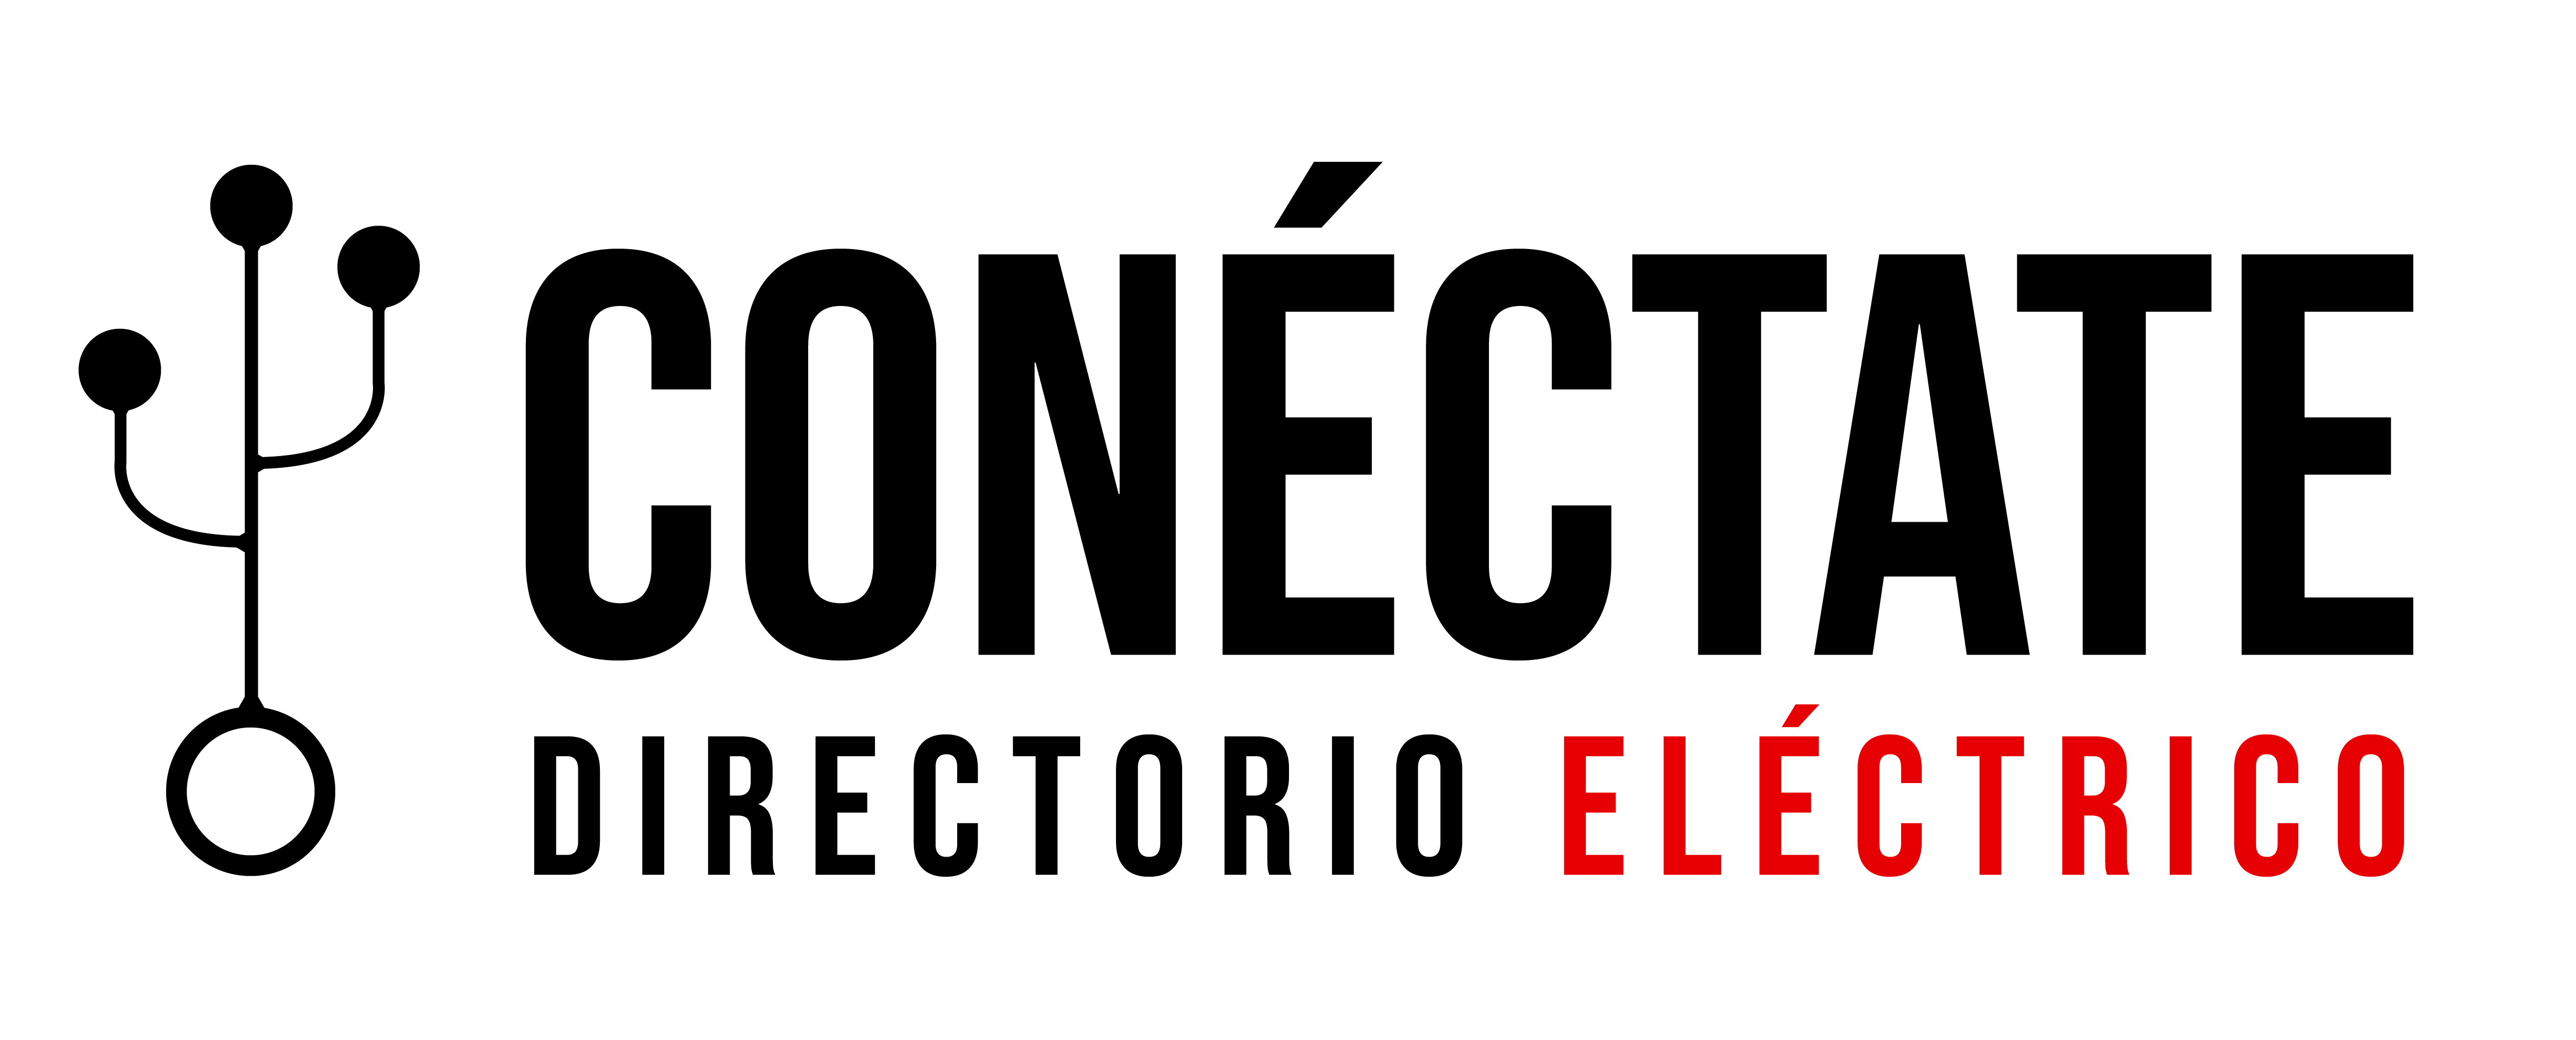 Directorio Eléctrico Conéctate | Directorio del sector eléctrico